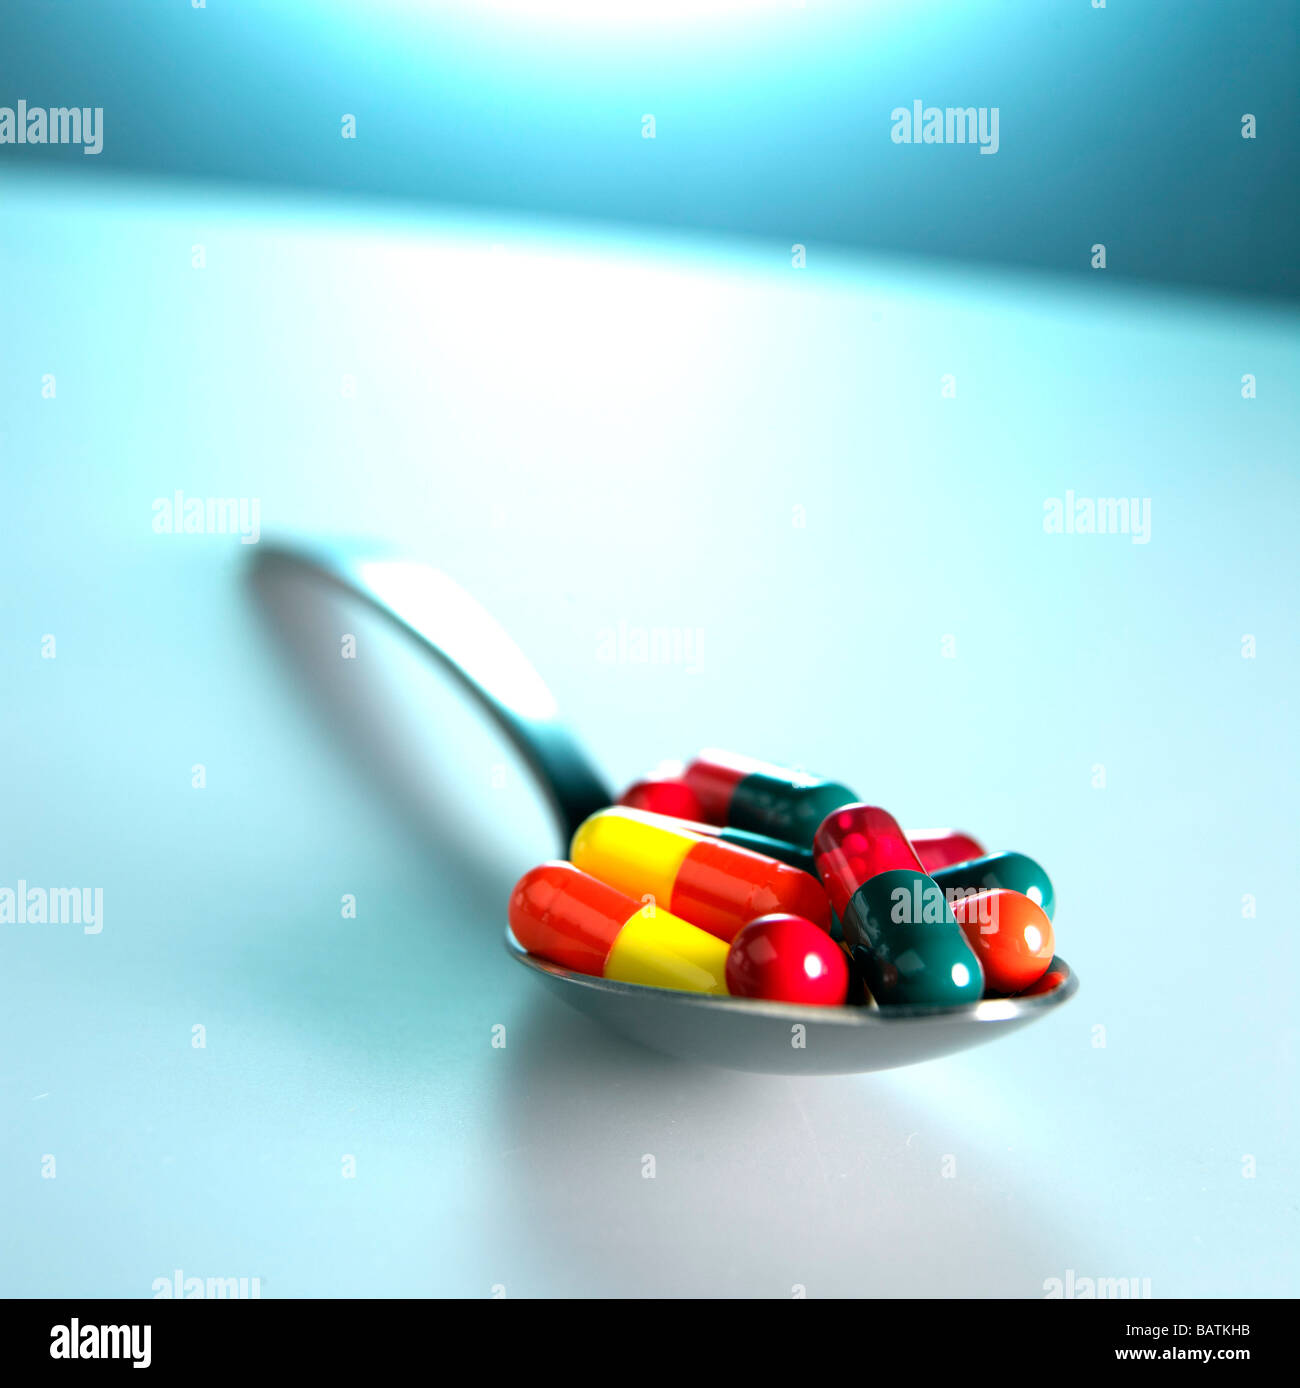 Pillole di vario tipo su un cucchiaio. Questo potrebbe rappresentare un sovradosaggio o la necessità di assumere una varietà di farmaci per il trattamento di una malattia. Foto Stock